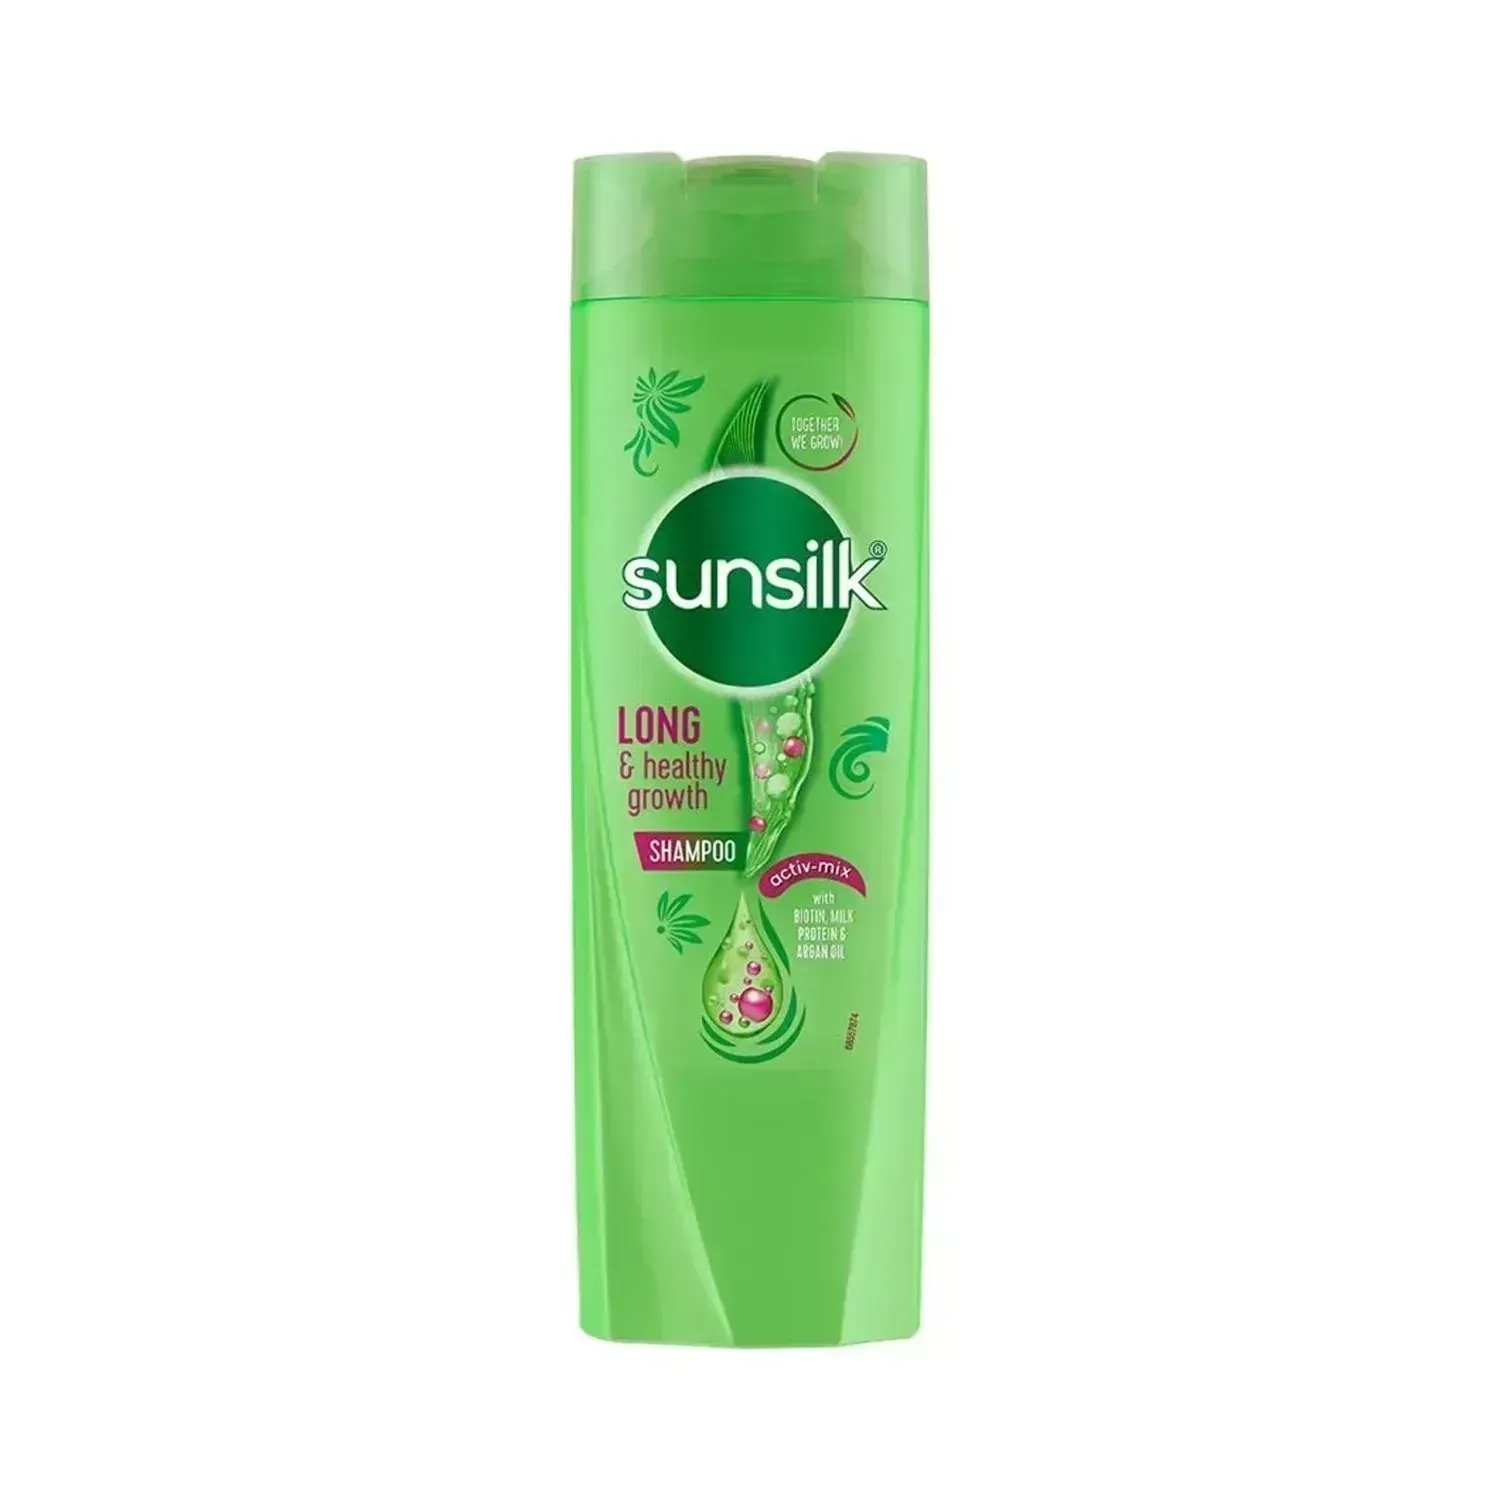 Sunsilk | Sunsilk Long & Healthy Growth Shampoo - (180ml)